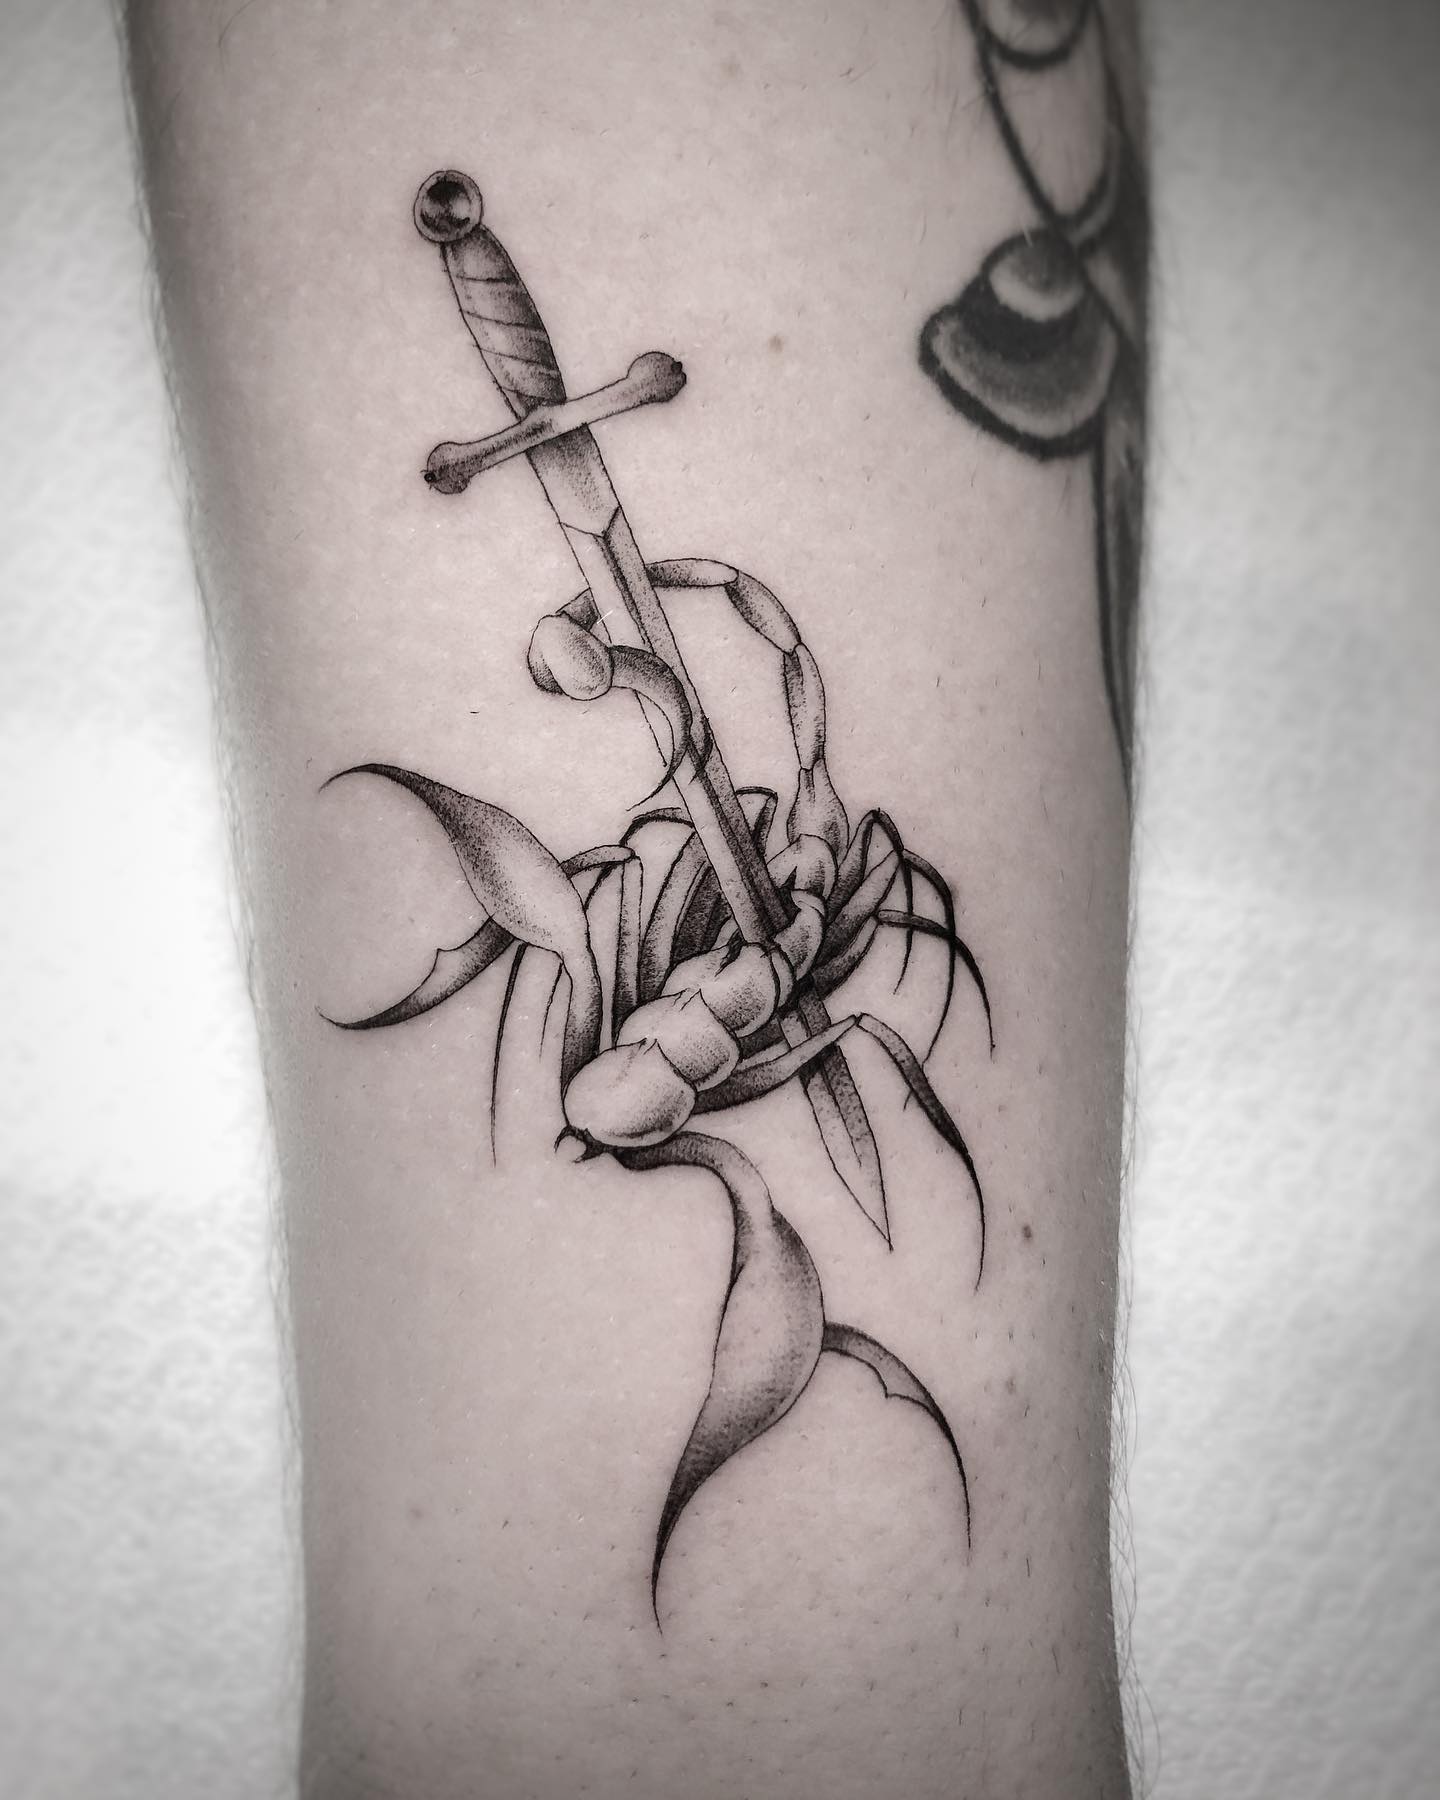 Scorpio script tattoo by @inkspiredyash @skinmachinetattoo . #scorpiotattoo  #inkedmen #artist #innerarmtattoo #scripttattoo #skinmachine... | Instagram